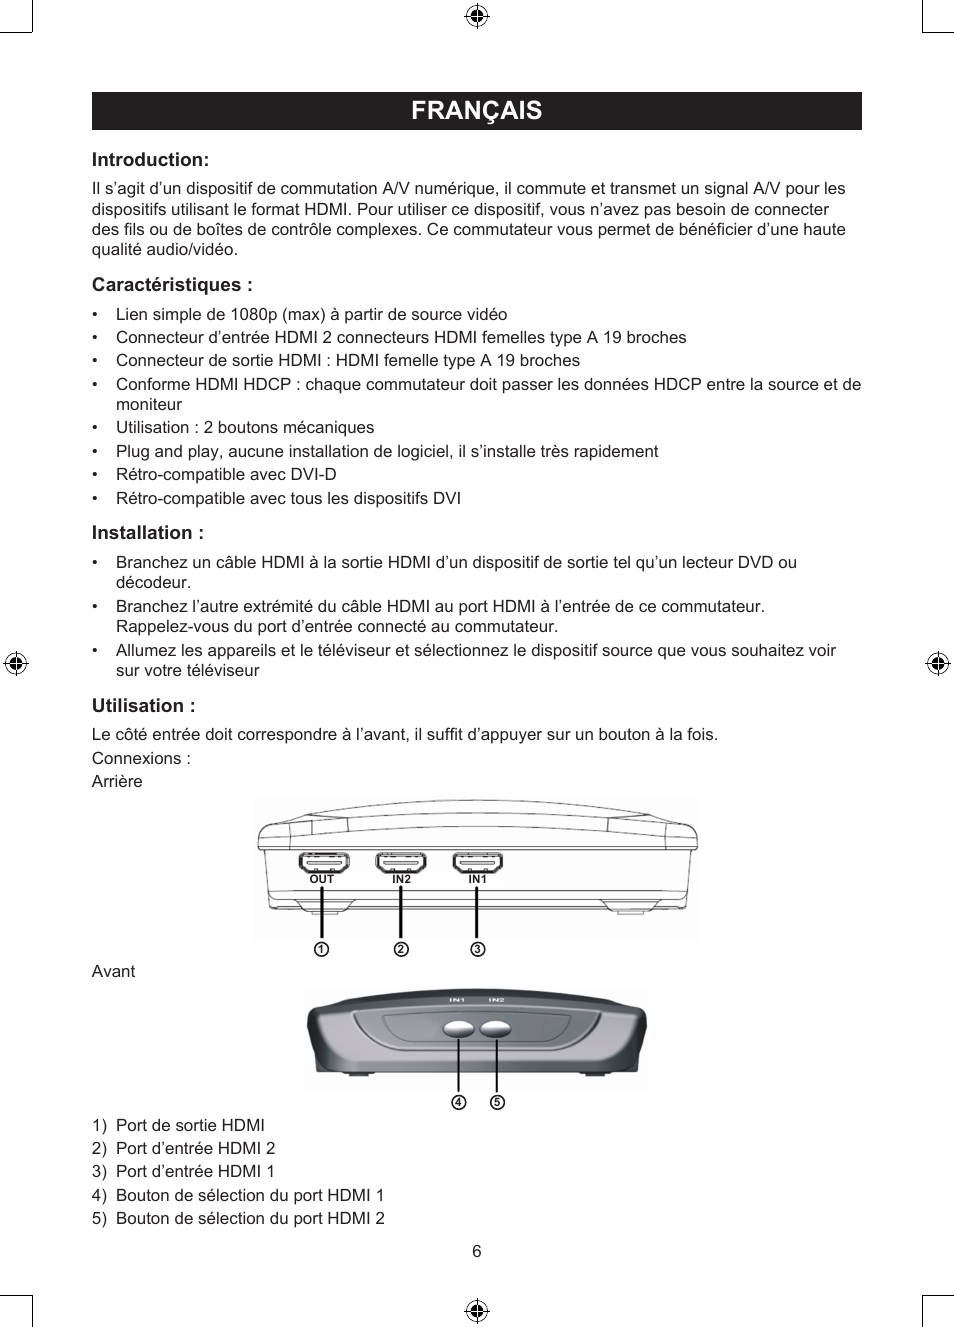 Français, Mode d'emploi (p. 6), Commutateur hdmi 2 ports manuel | Konig  Electronic 2 port HDMI switch User Manual | Page 6 / 29 | Original mode